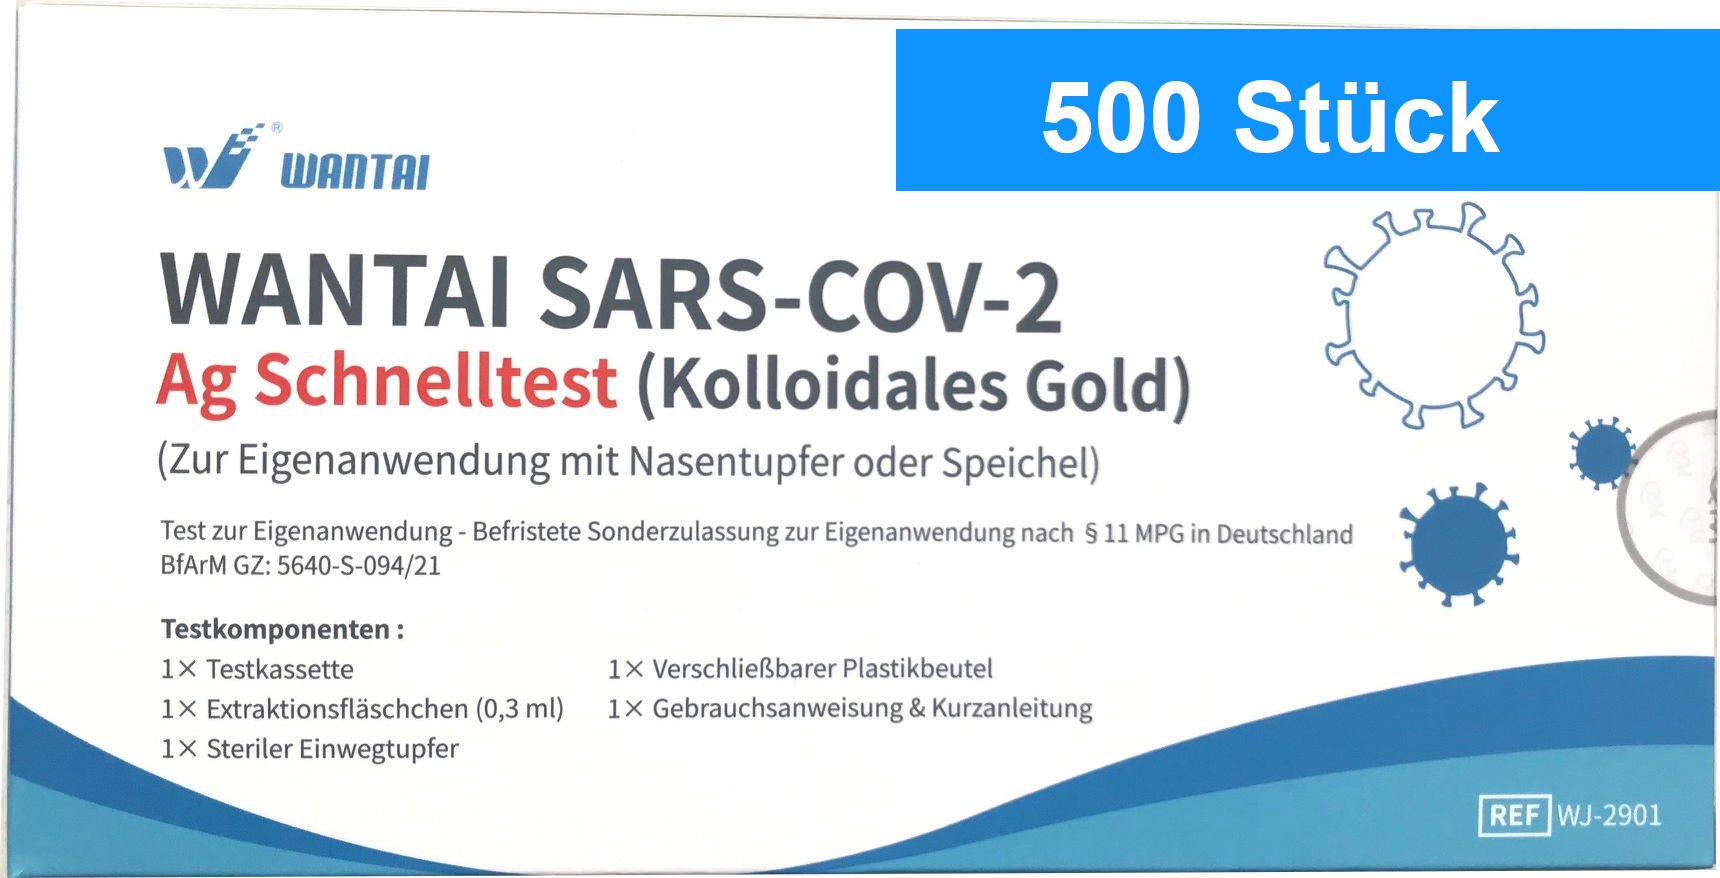 WANTAI SARS-COV-2 Schnelltest zur Eigenanwendung - 500 Stück (einzeln verpackt)